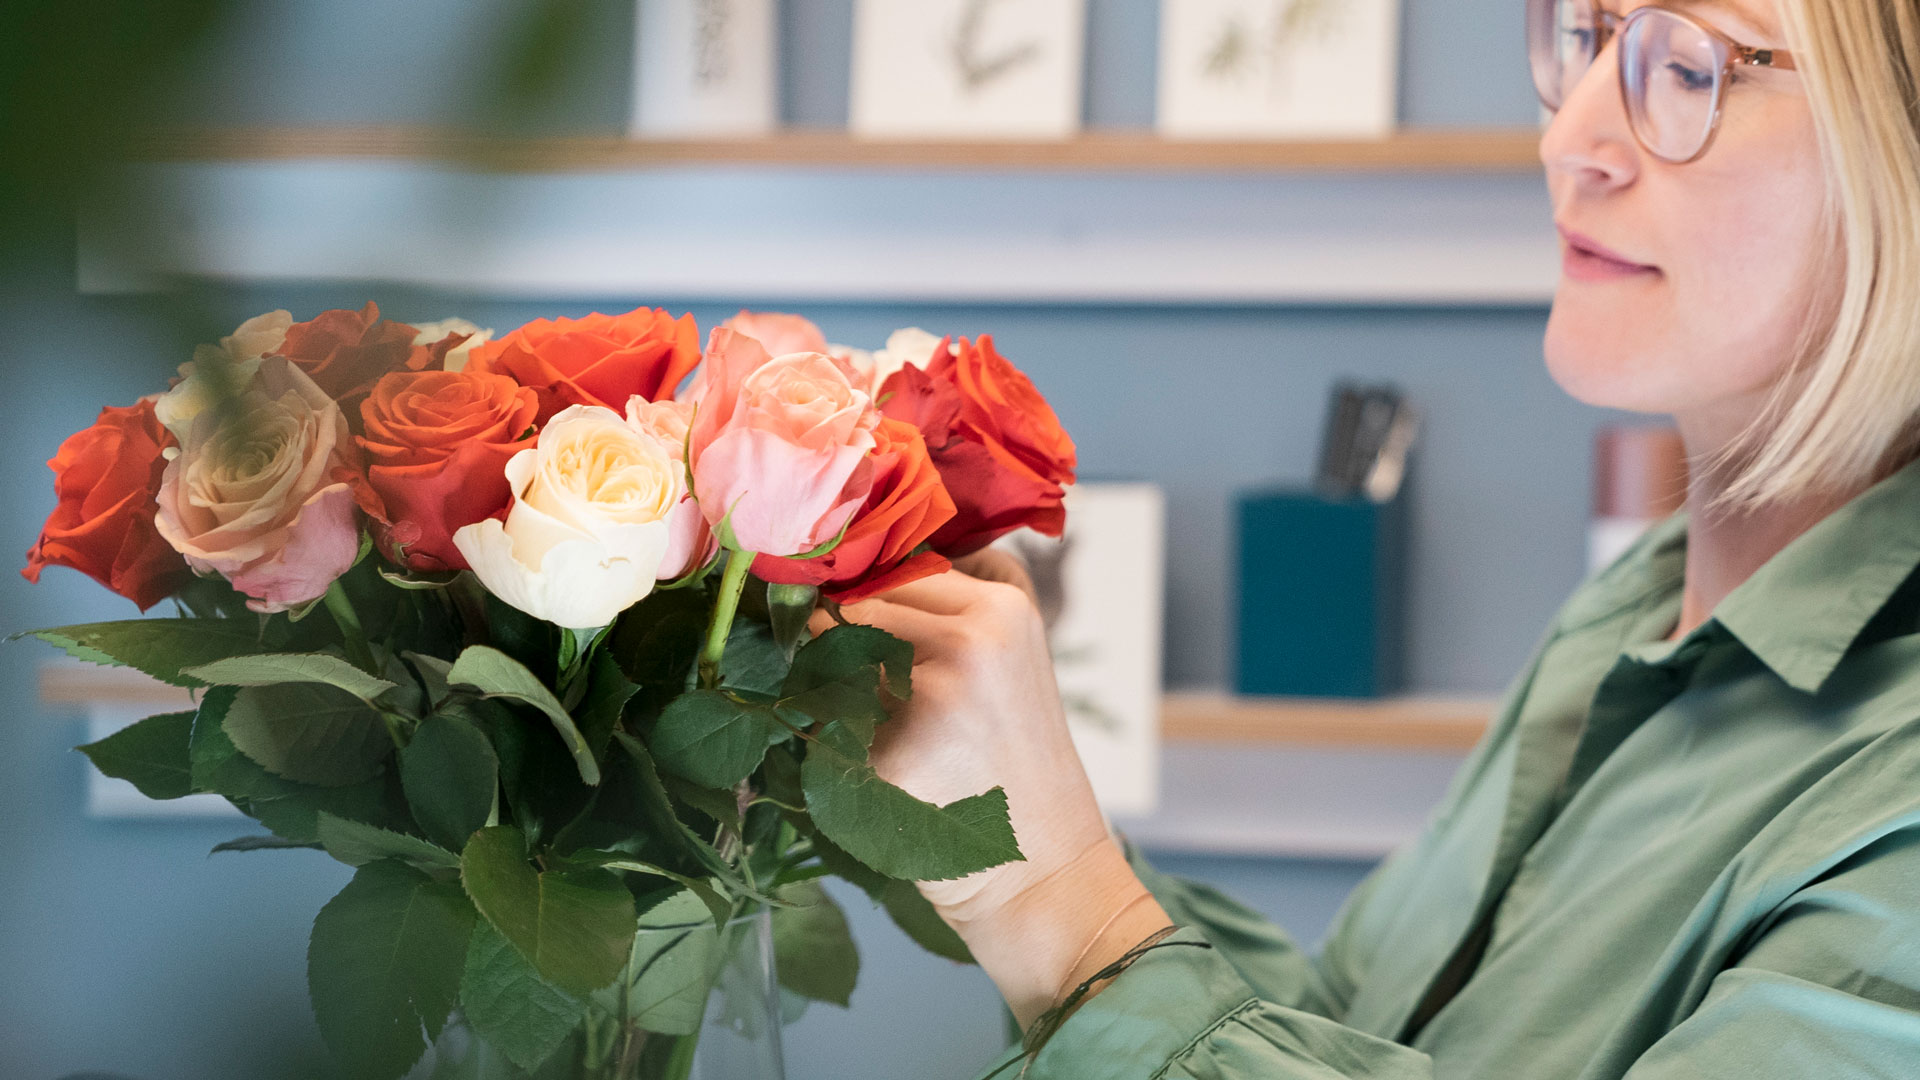 Floristin Nicole Hunziker vom Bloomen Atelier in Zürich arrangiert einen bunten Rosenstrauss